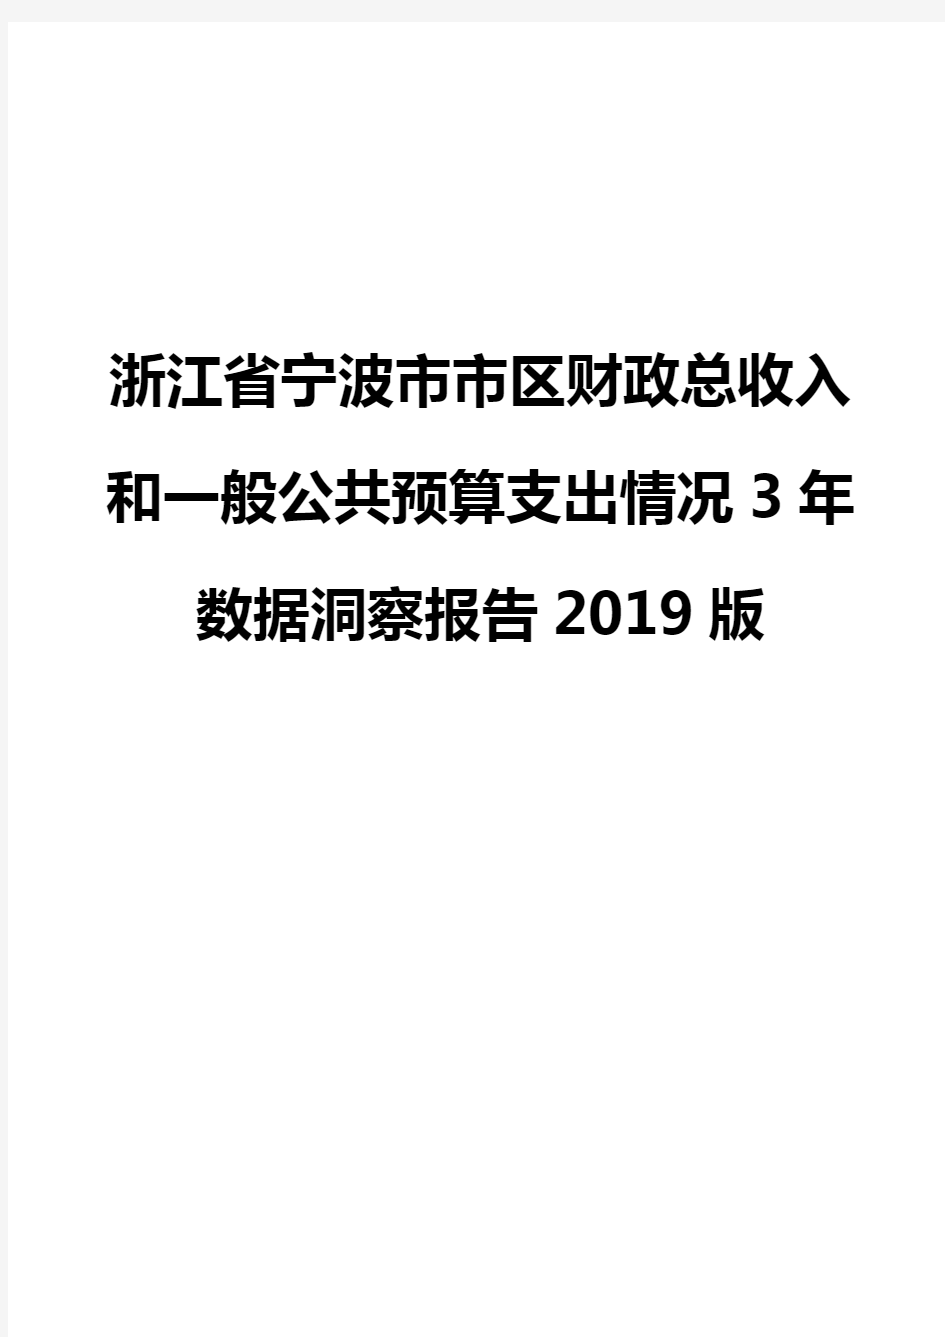 浙江省宁波市市区财政总收入和一般公共预算支出情况3年数据洞察报告2019版